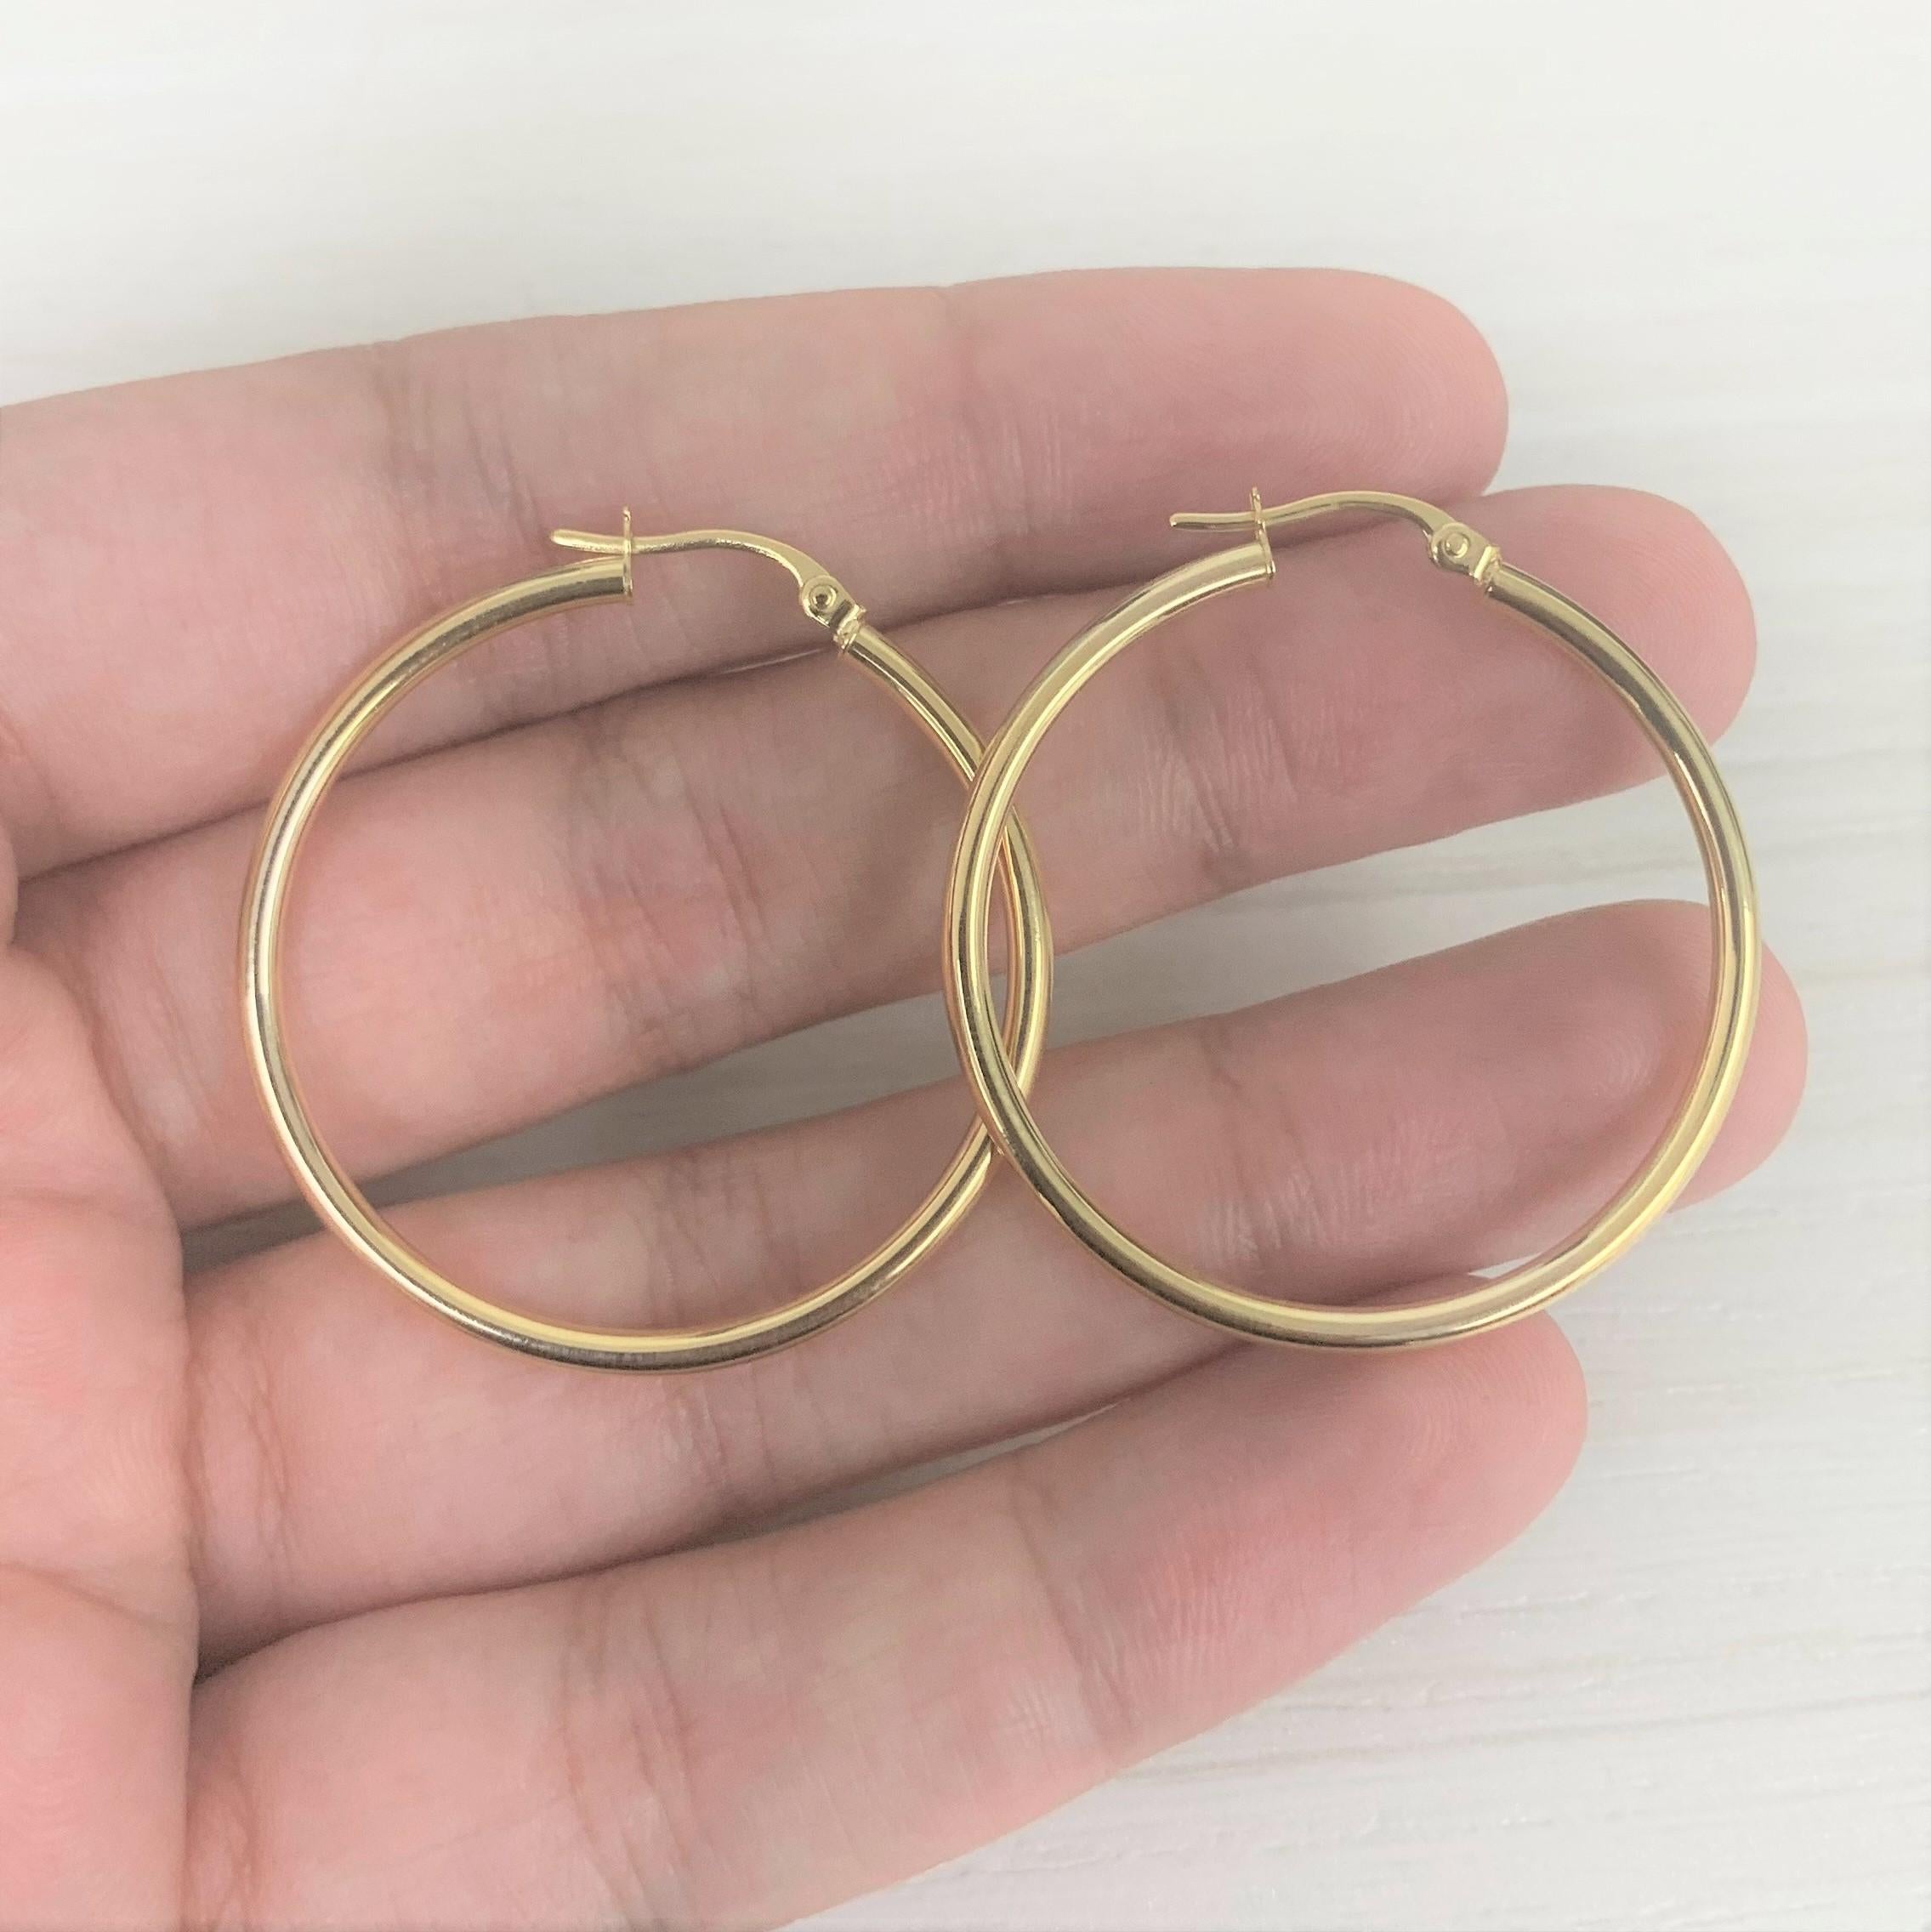 14-karat gold hoop earrings